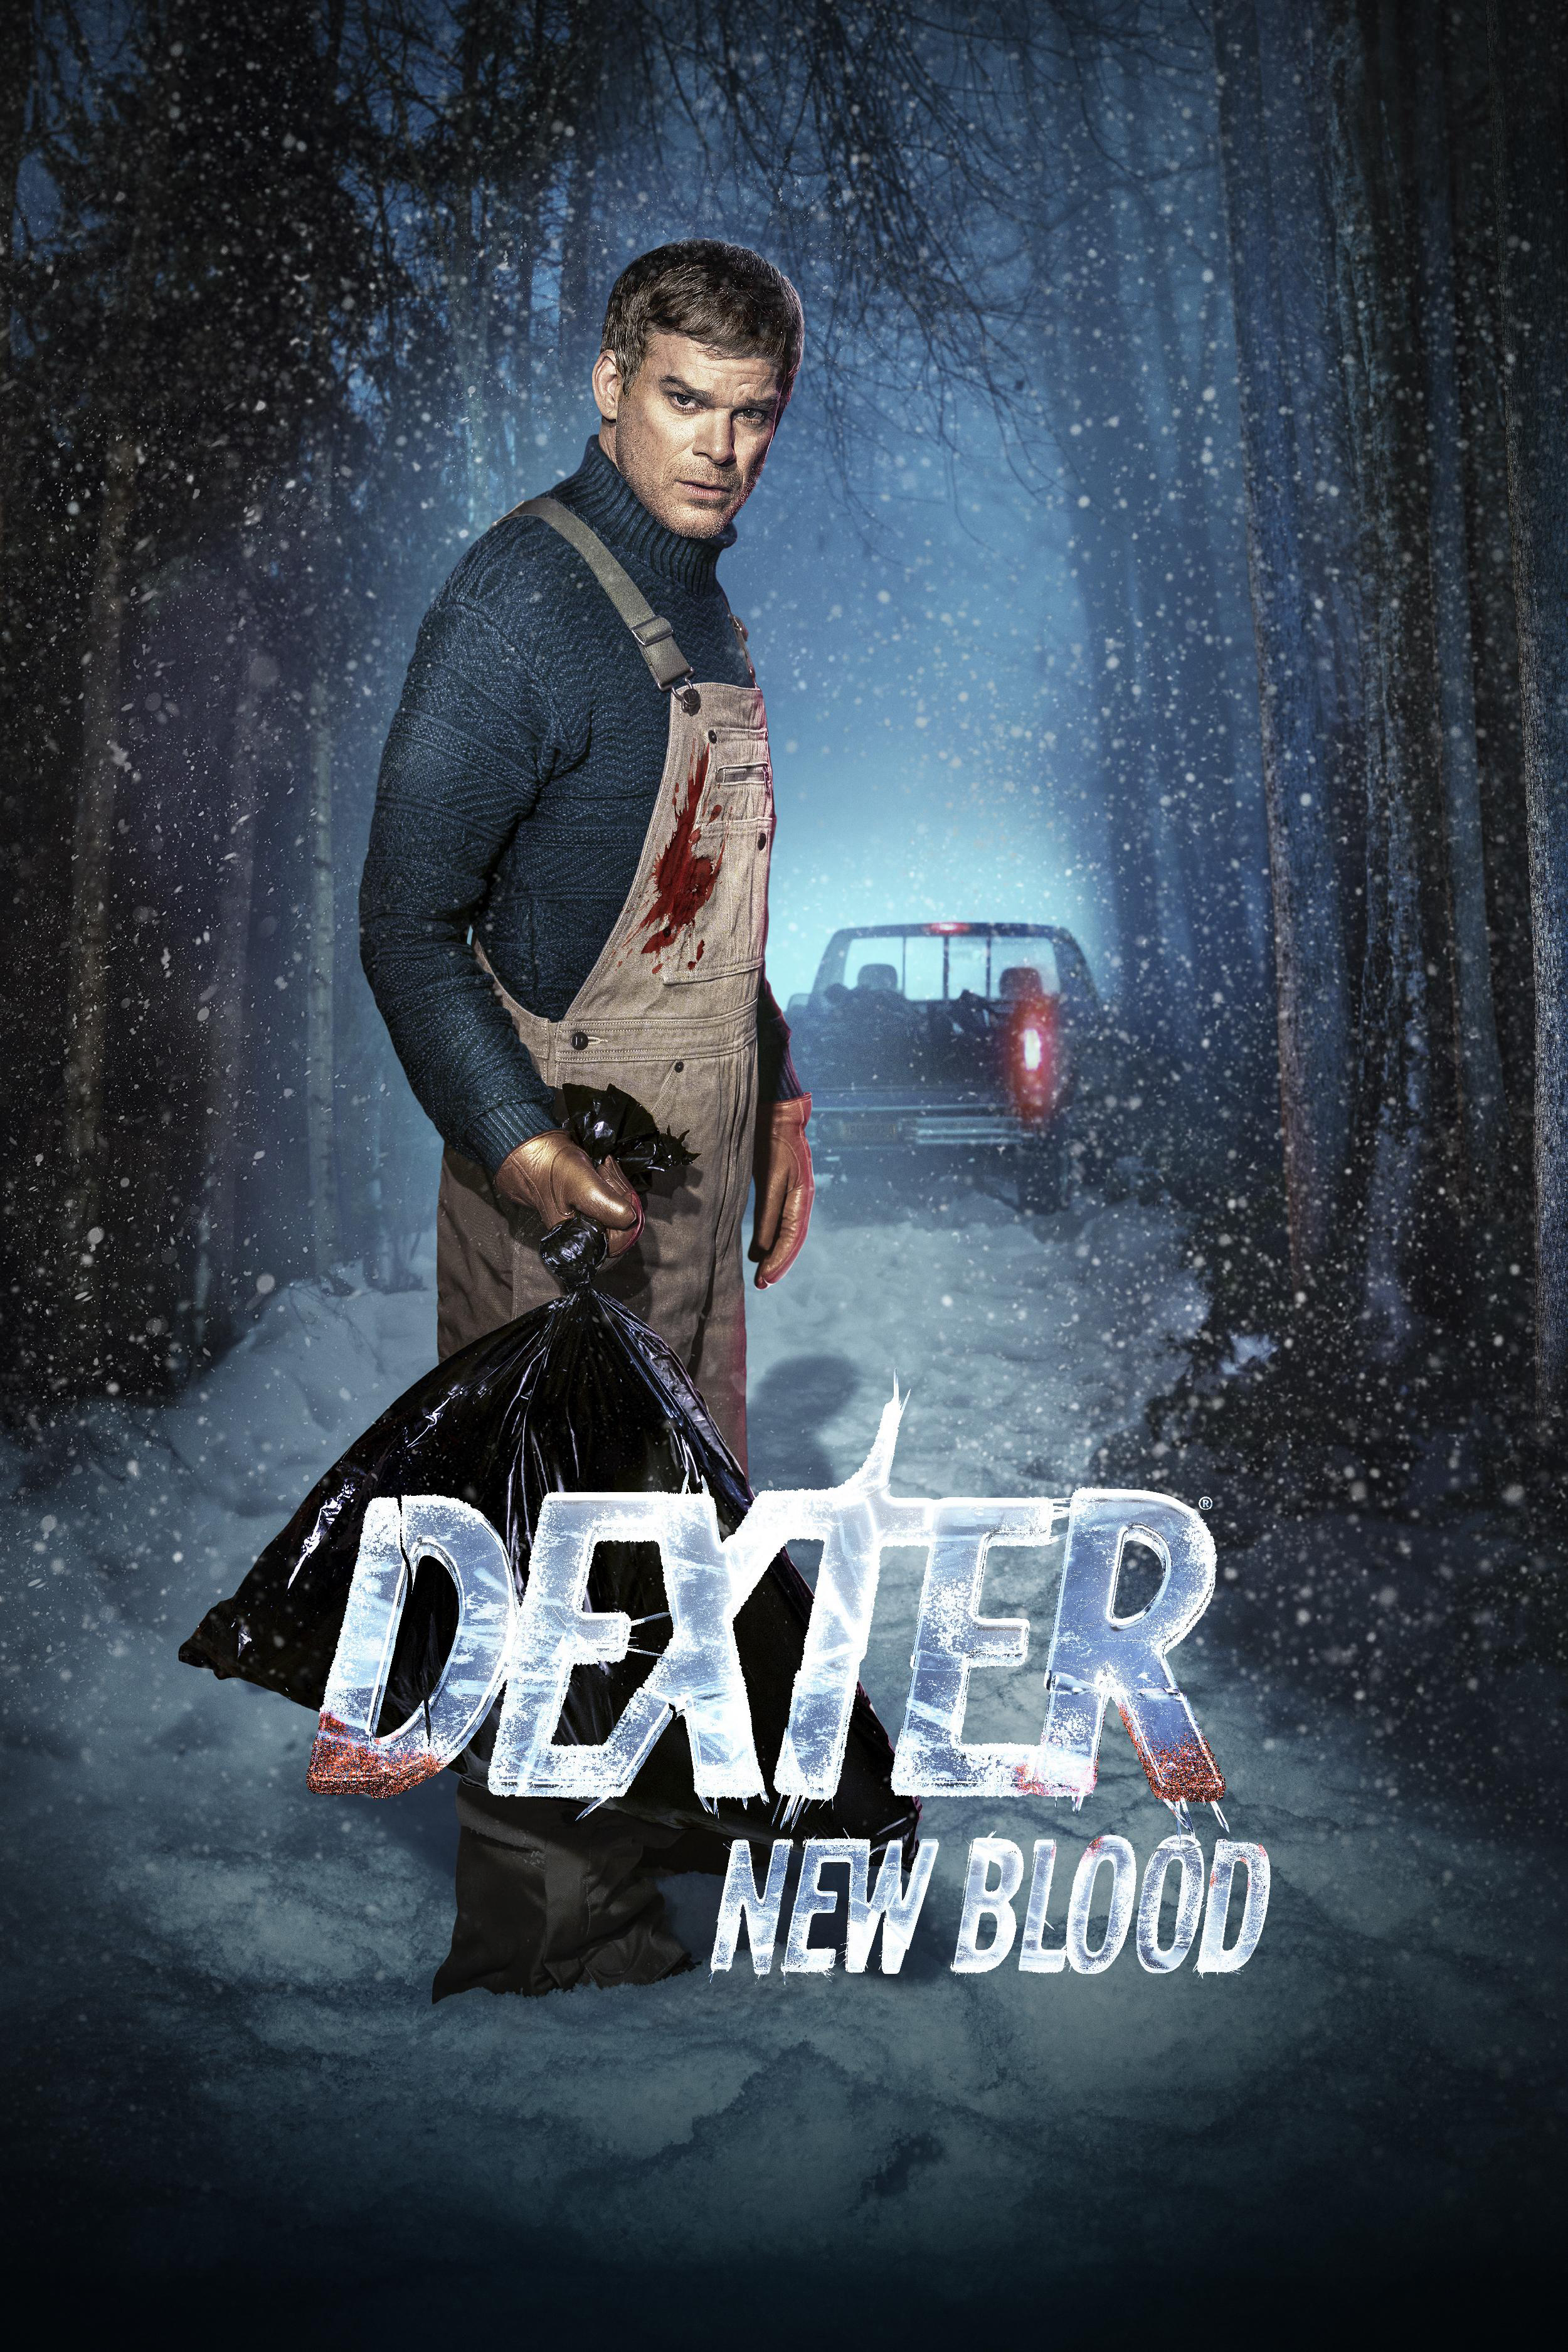 Dexter: New Blood [Blu-ray] - Best Buy